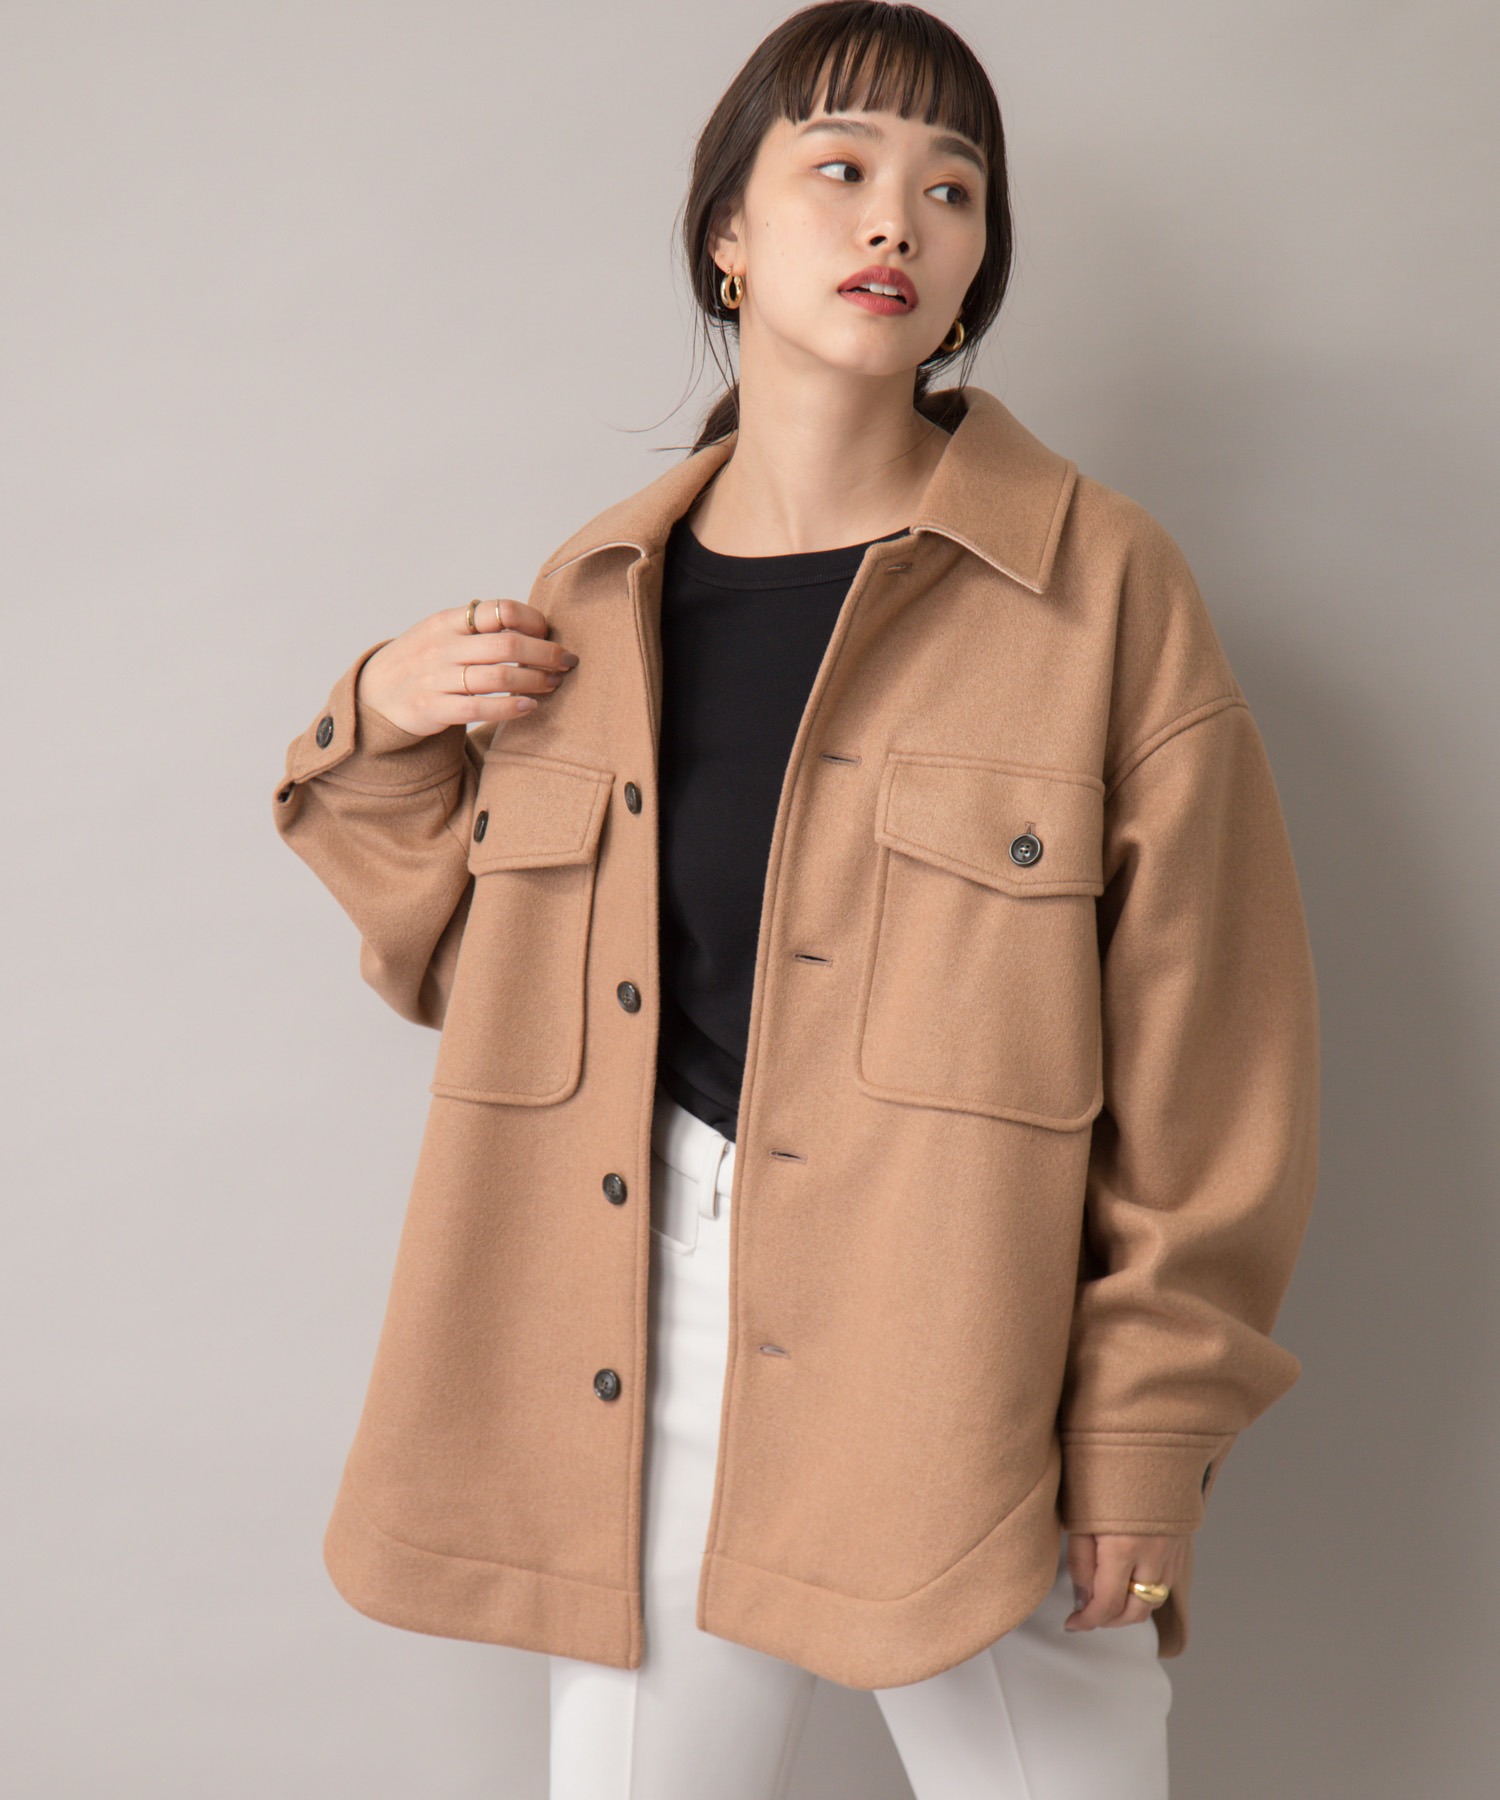 【ラッピング無料】 Liyoca ニットメルトンオーバーシャツジャケット 日本限定 CPOジャケット